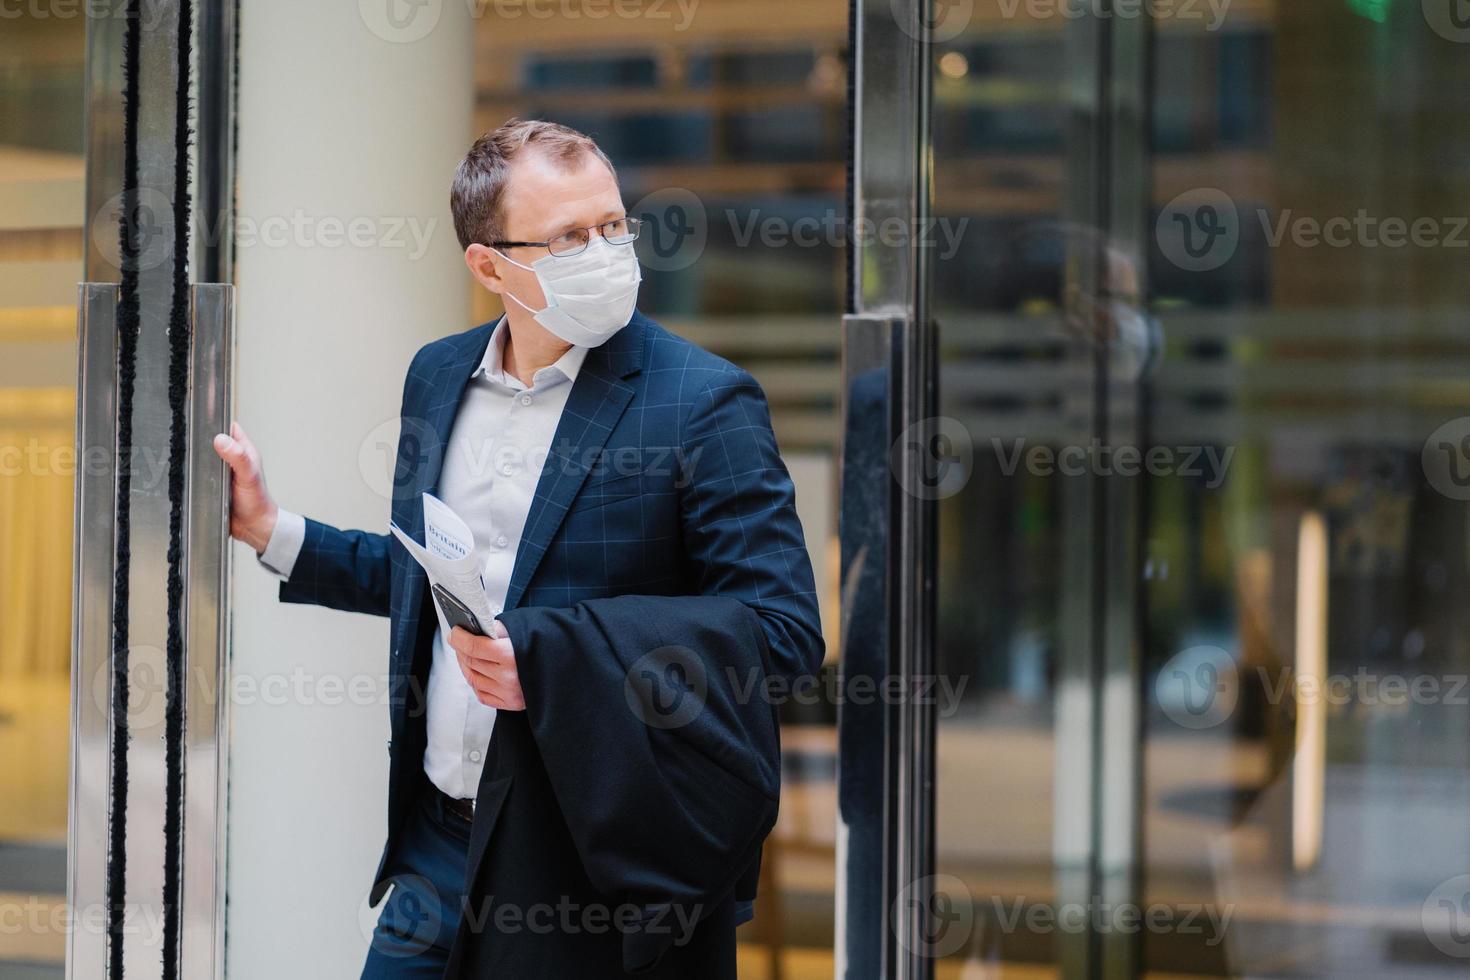 ademhalingsbescherming, coronavirus, gevaarlijke ziekte. serieuze man staat in deuren van kantoorgebouw, draagt medisch masker, houdt moderne mobiele telefoon vast, krant om artikel over covid-19-behandeling te lezen foto